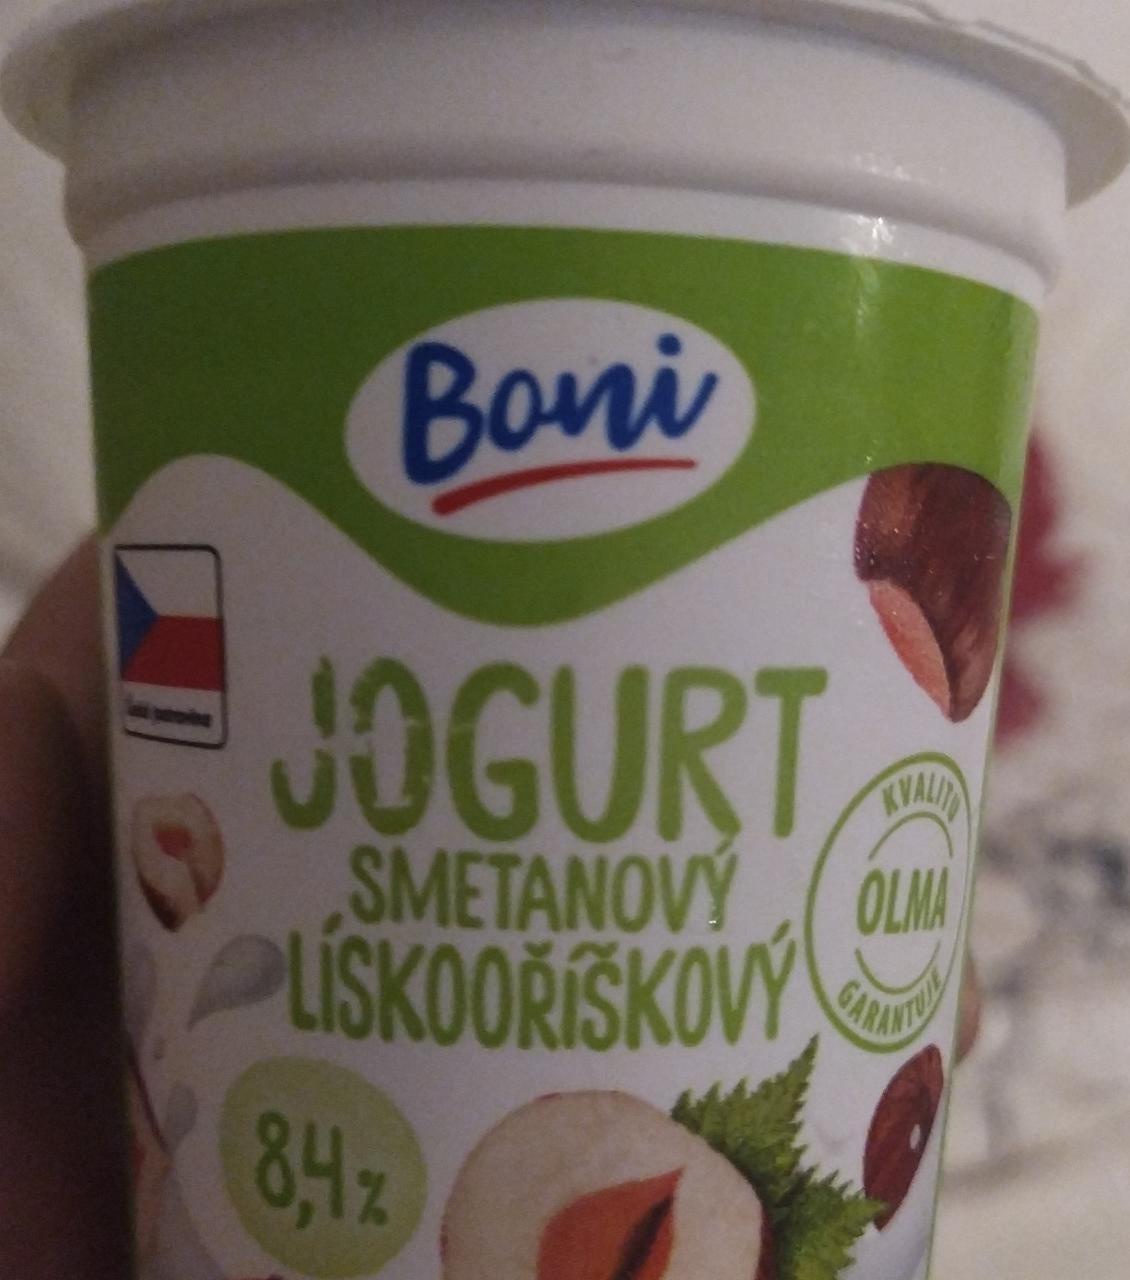 Фото - Boni jogurt lískooříškový 8.4%